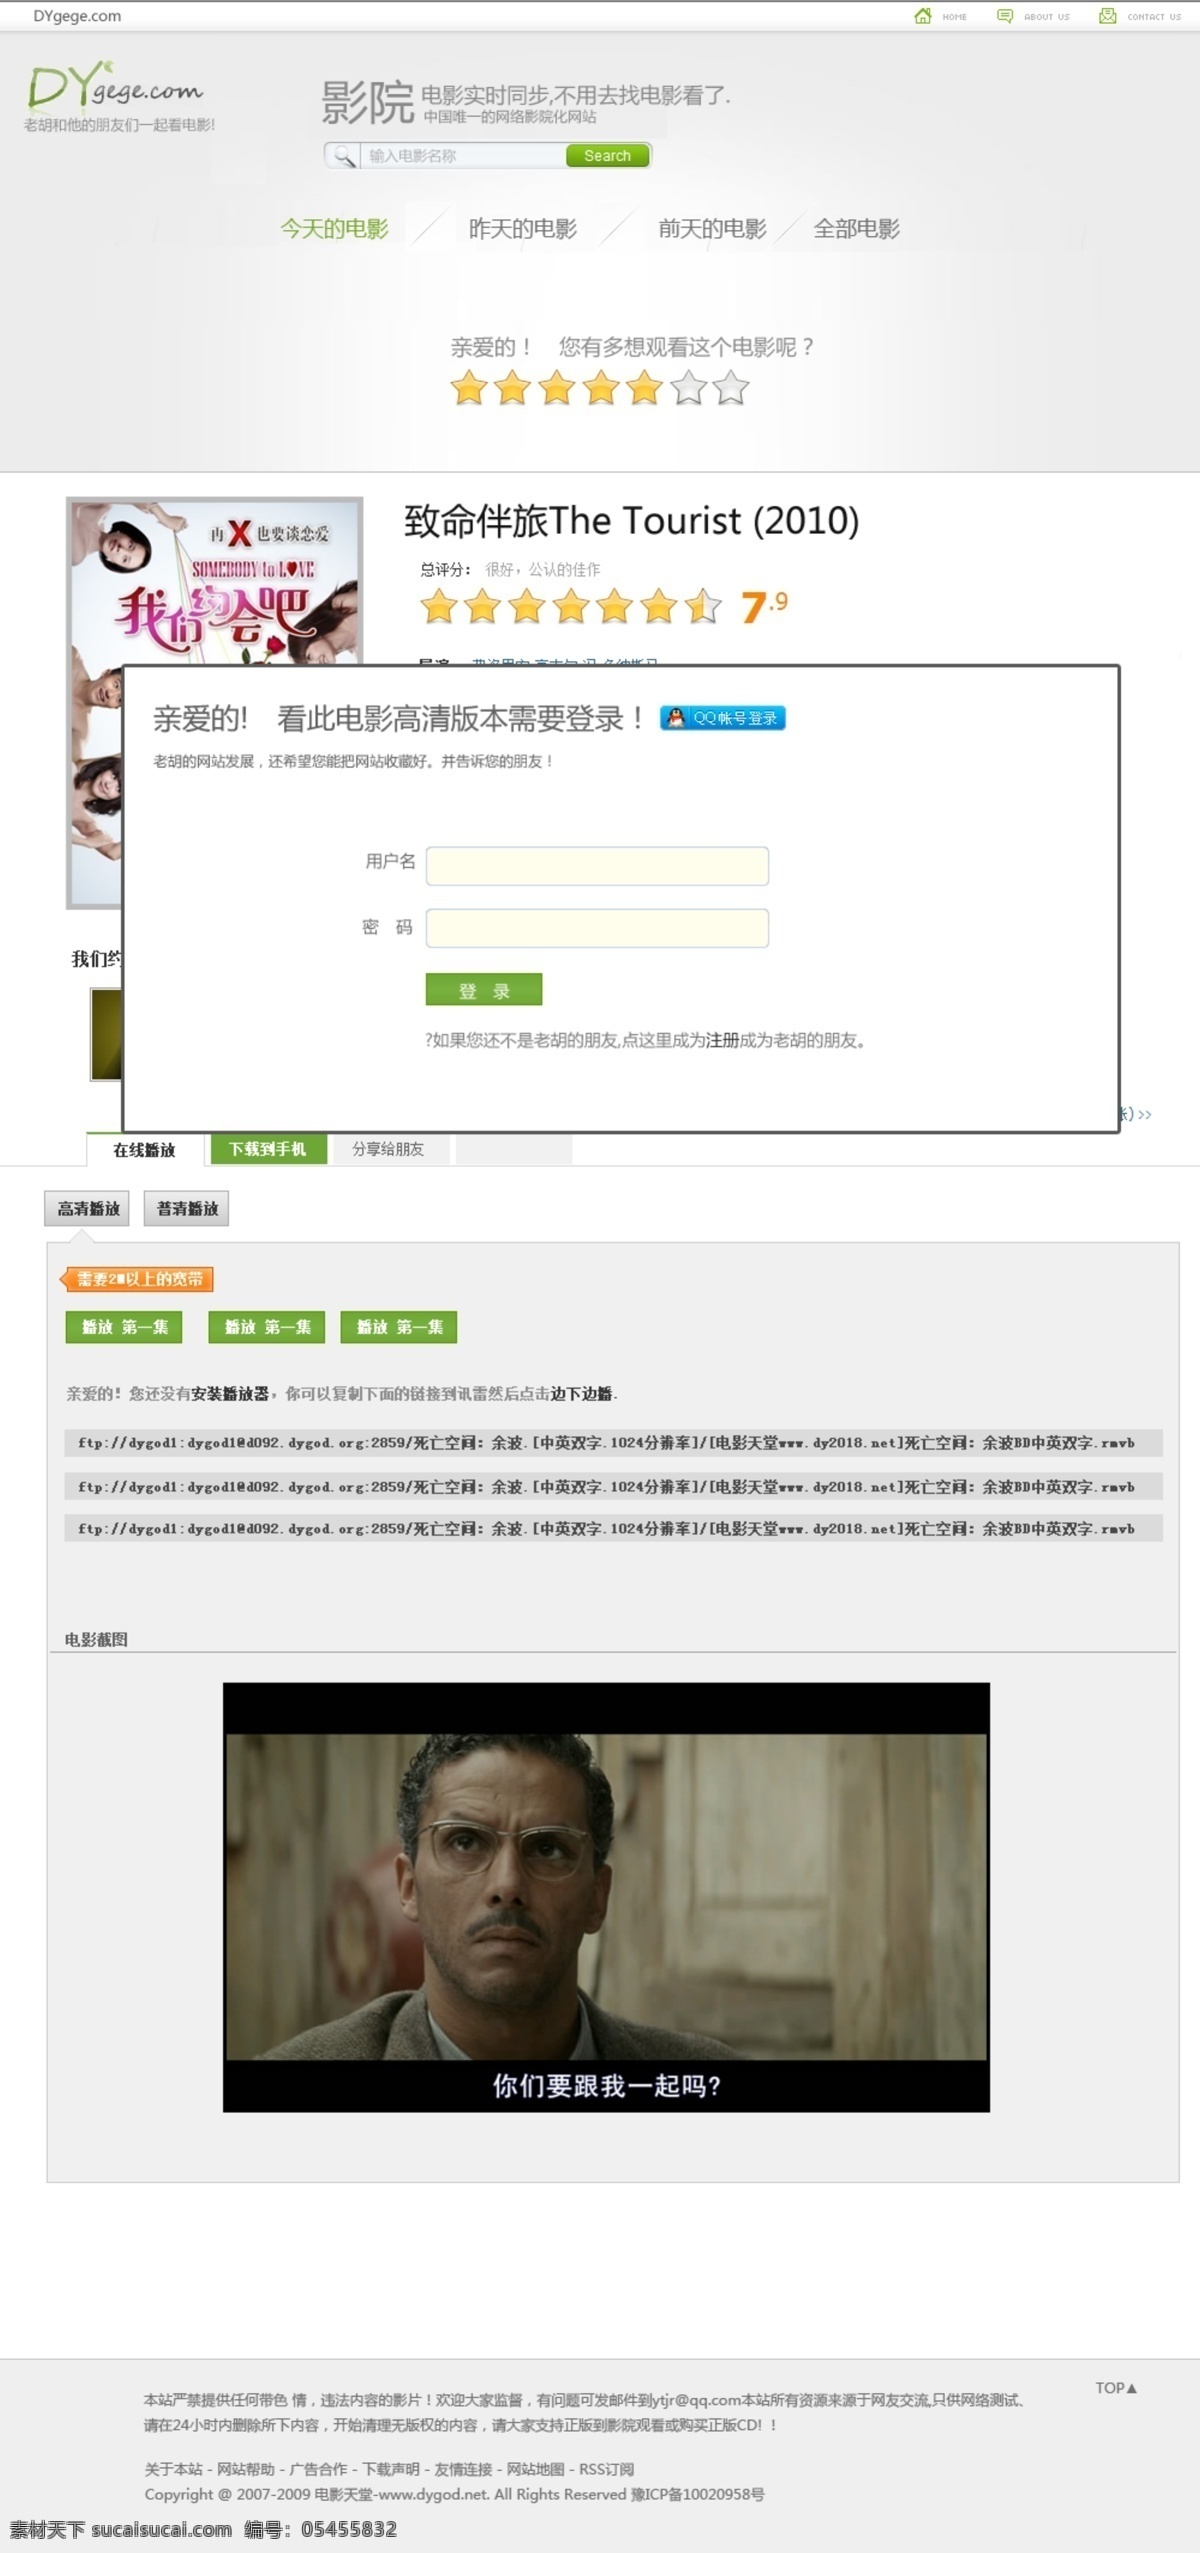 影视 网页模板 登陆 页 登陆模板 网页登陆 影视模板 源文件 中文模版 影视网页 网页素材